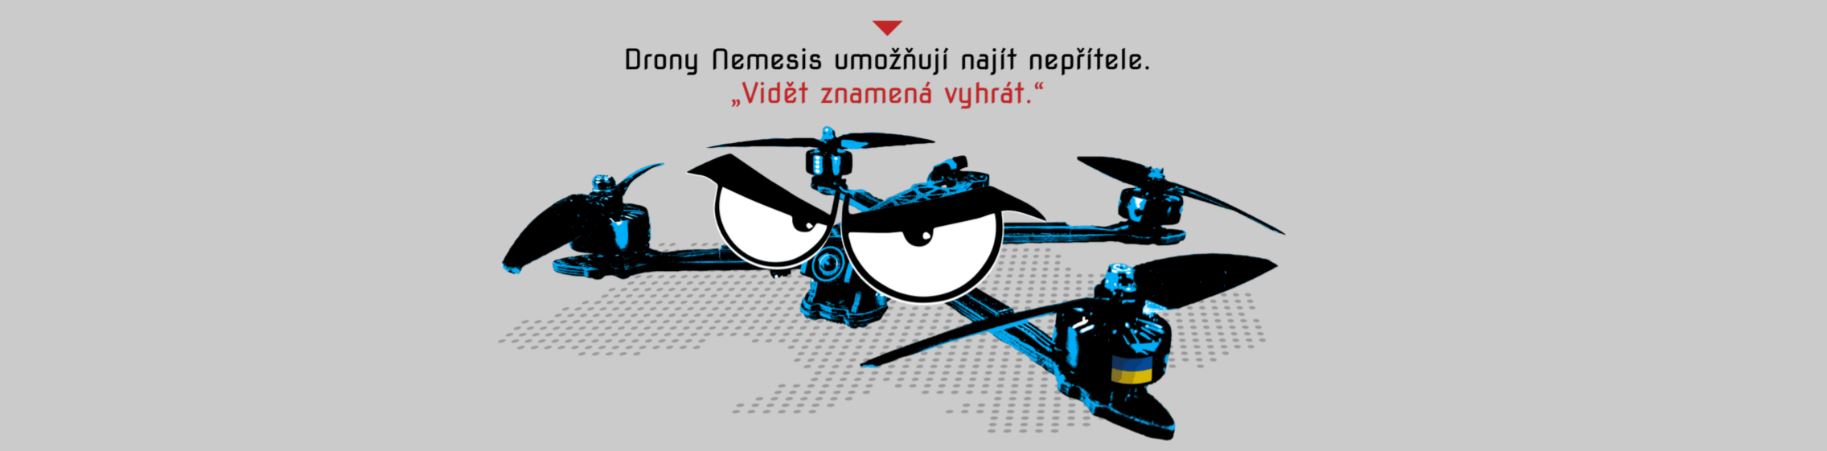 Kraj poskytne milion korun na pořízení dronů Nemesis pro Ukrajinu